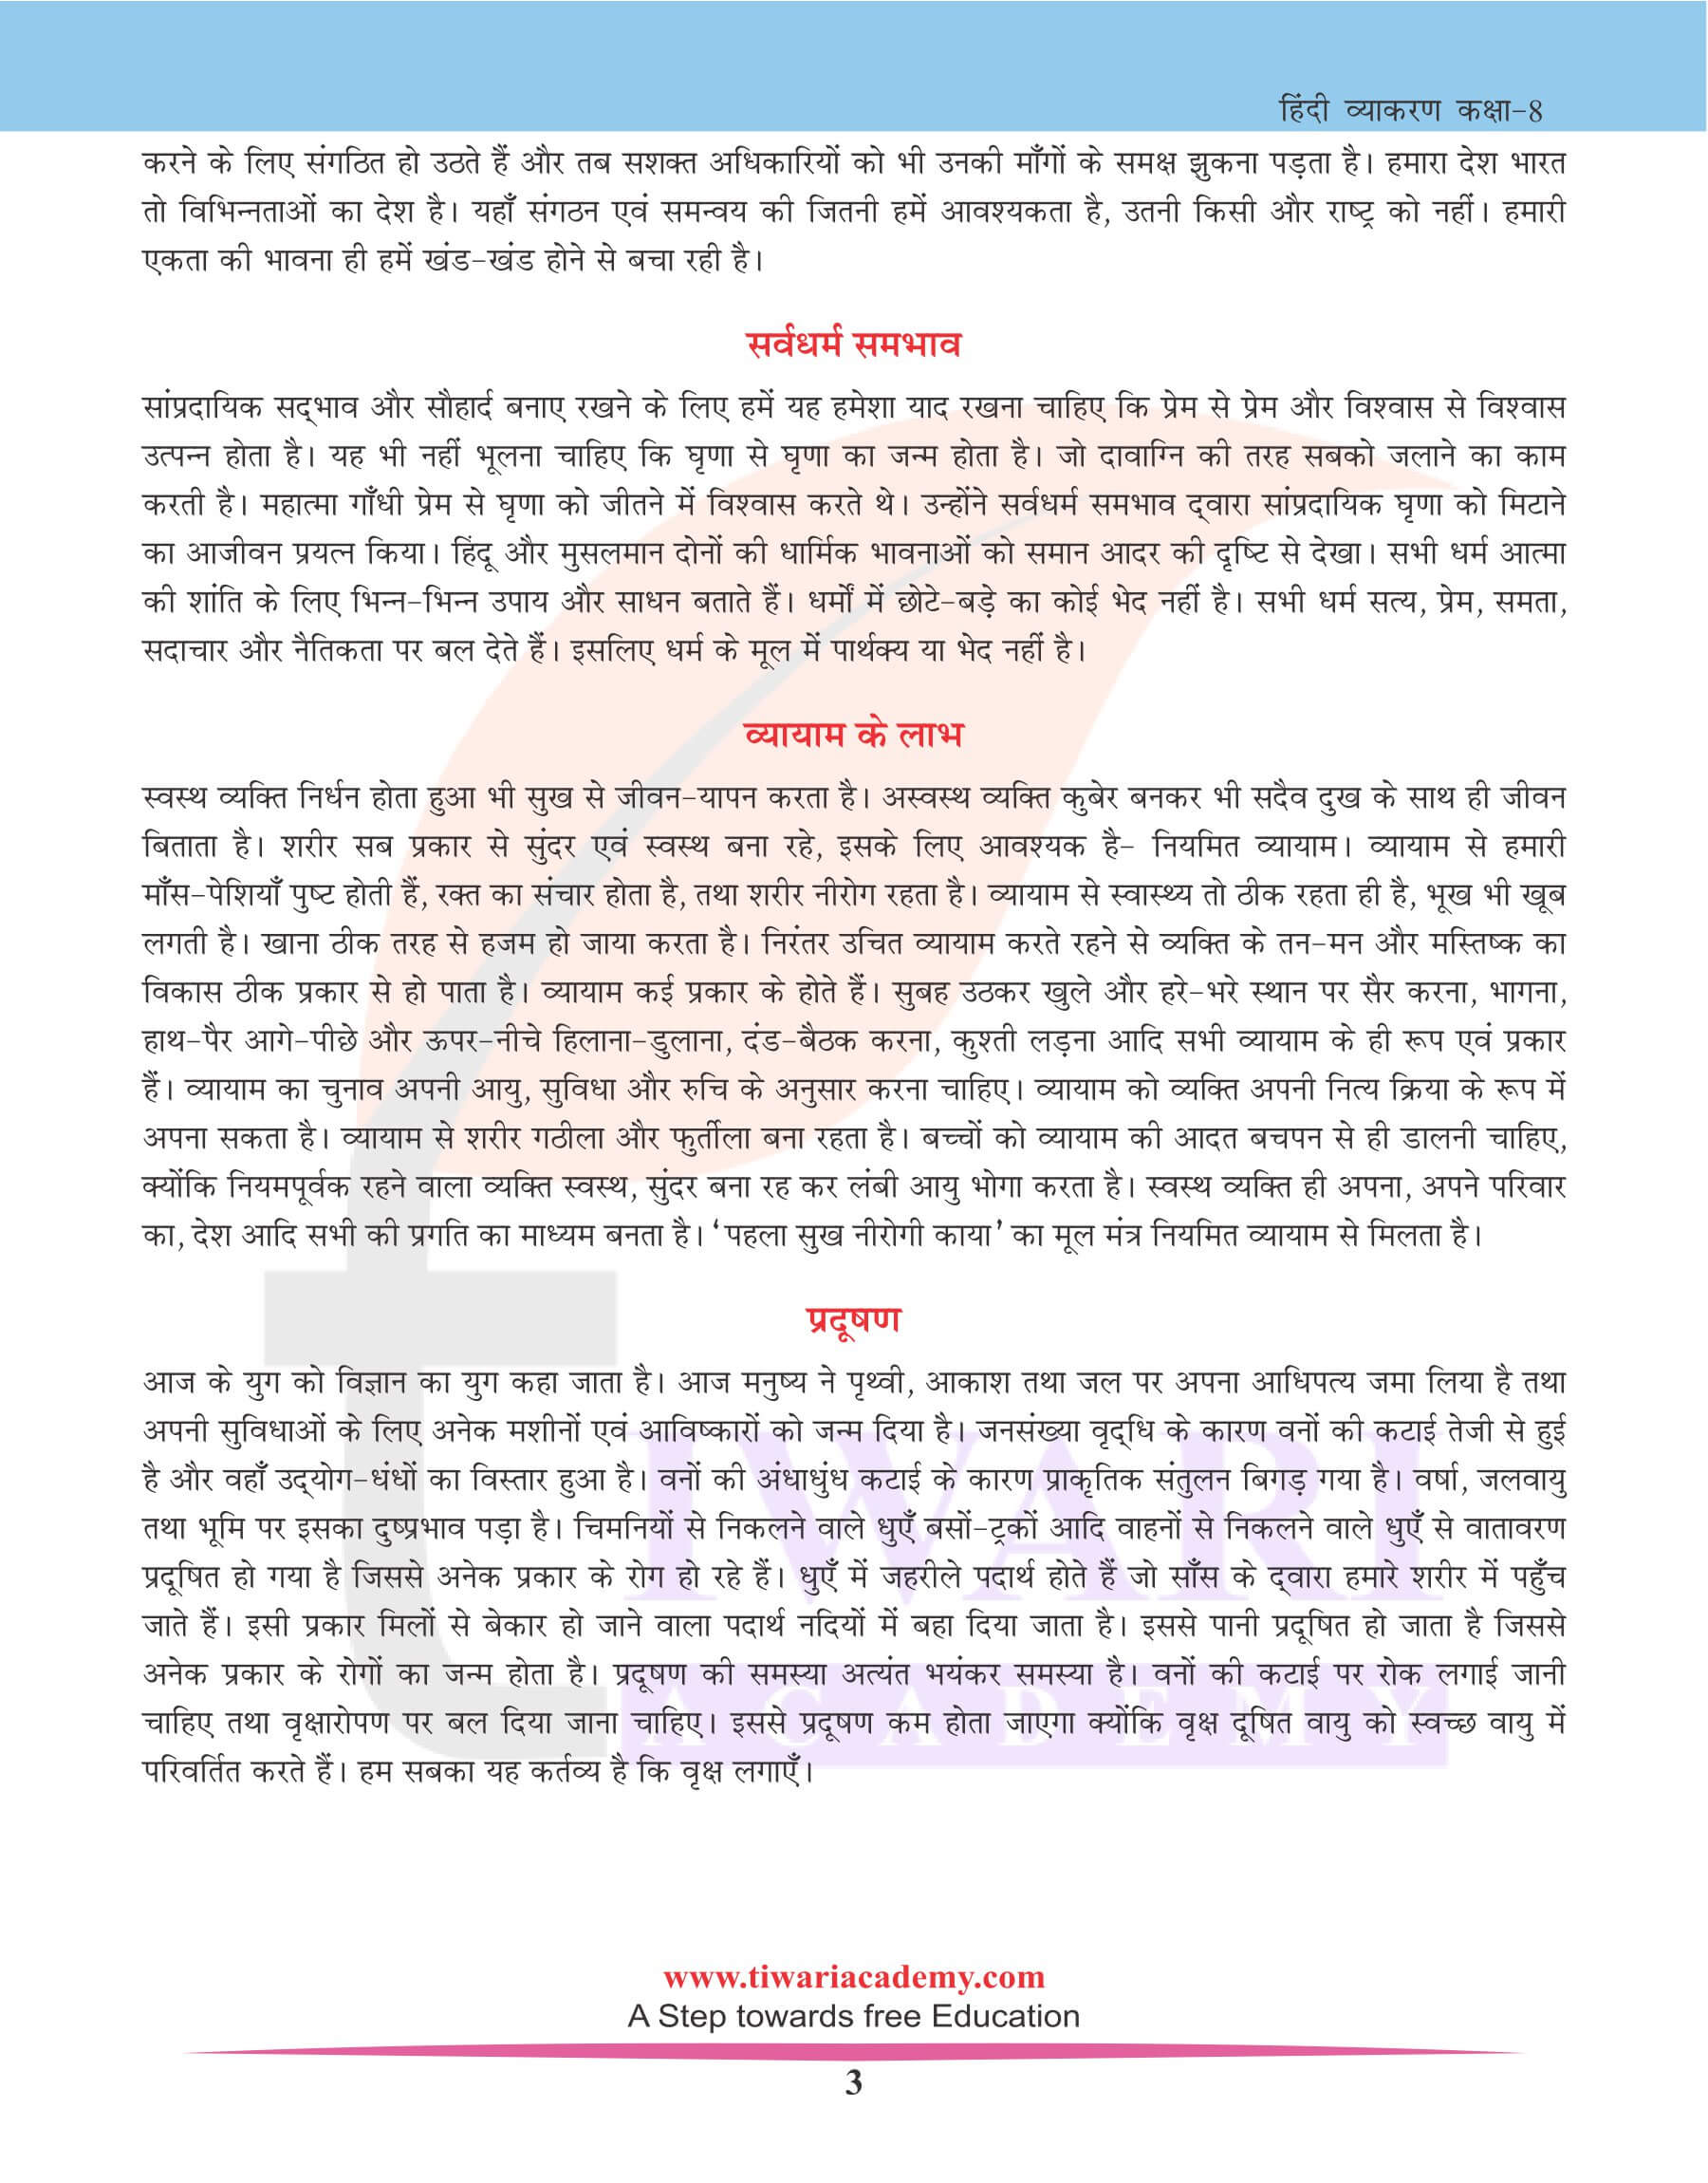 कक्षा 8 हिंदी व्याकरण में अनुच्छेद लेखन